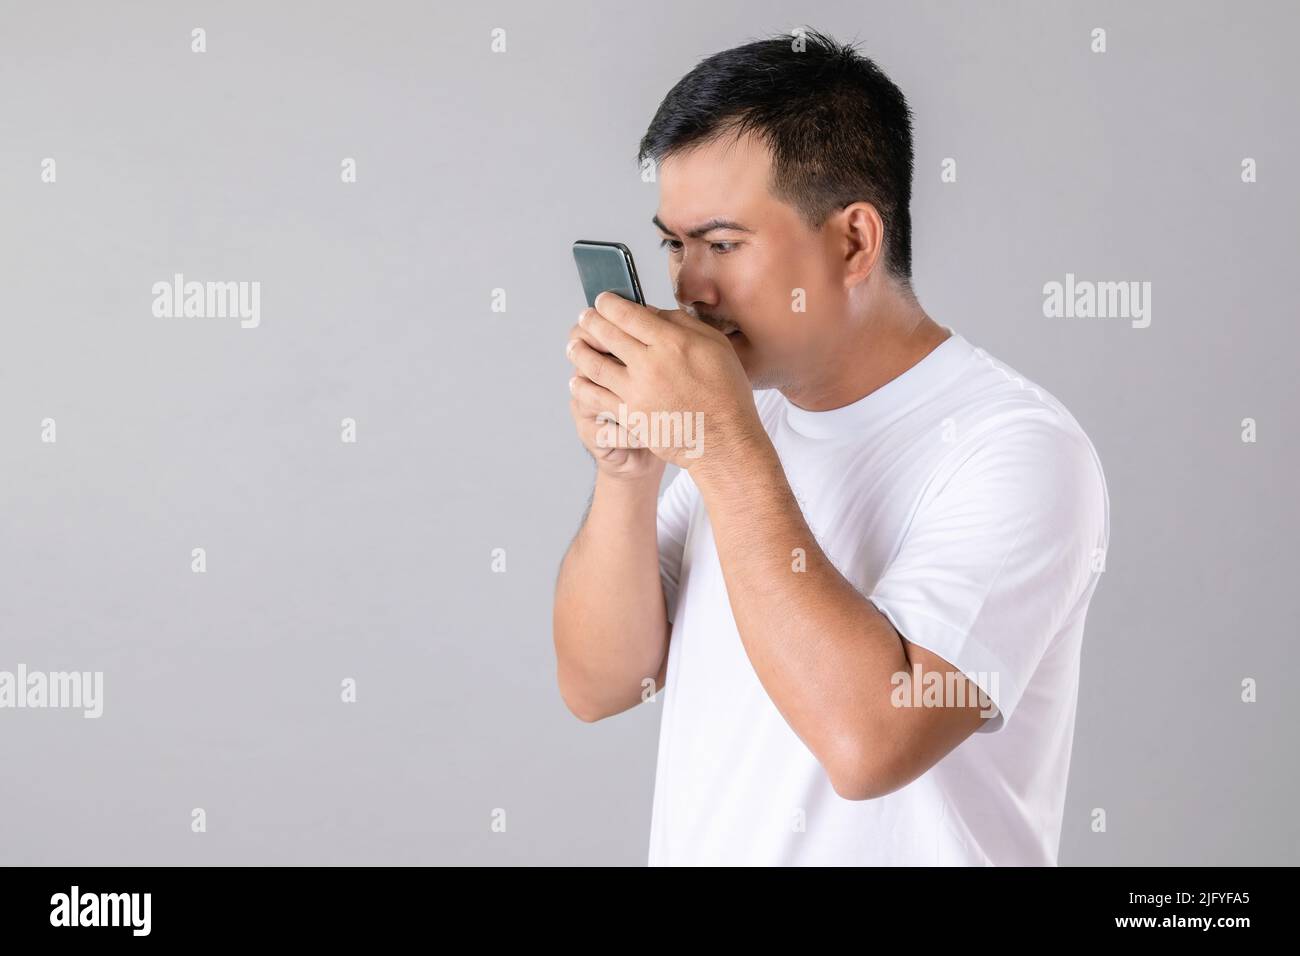 Kurz- oder Weitblick Konzept : Mann versucht, näher auf dem Smartphone im Studio auf grauem Hintergrund aufgenommen zu suchen Stockfoto